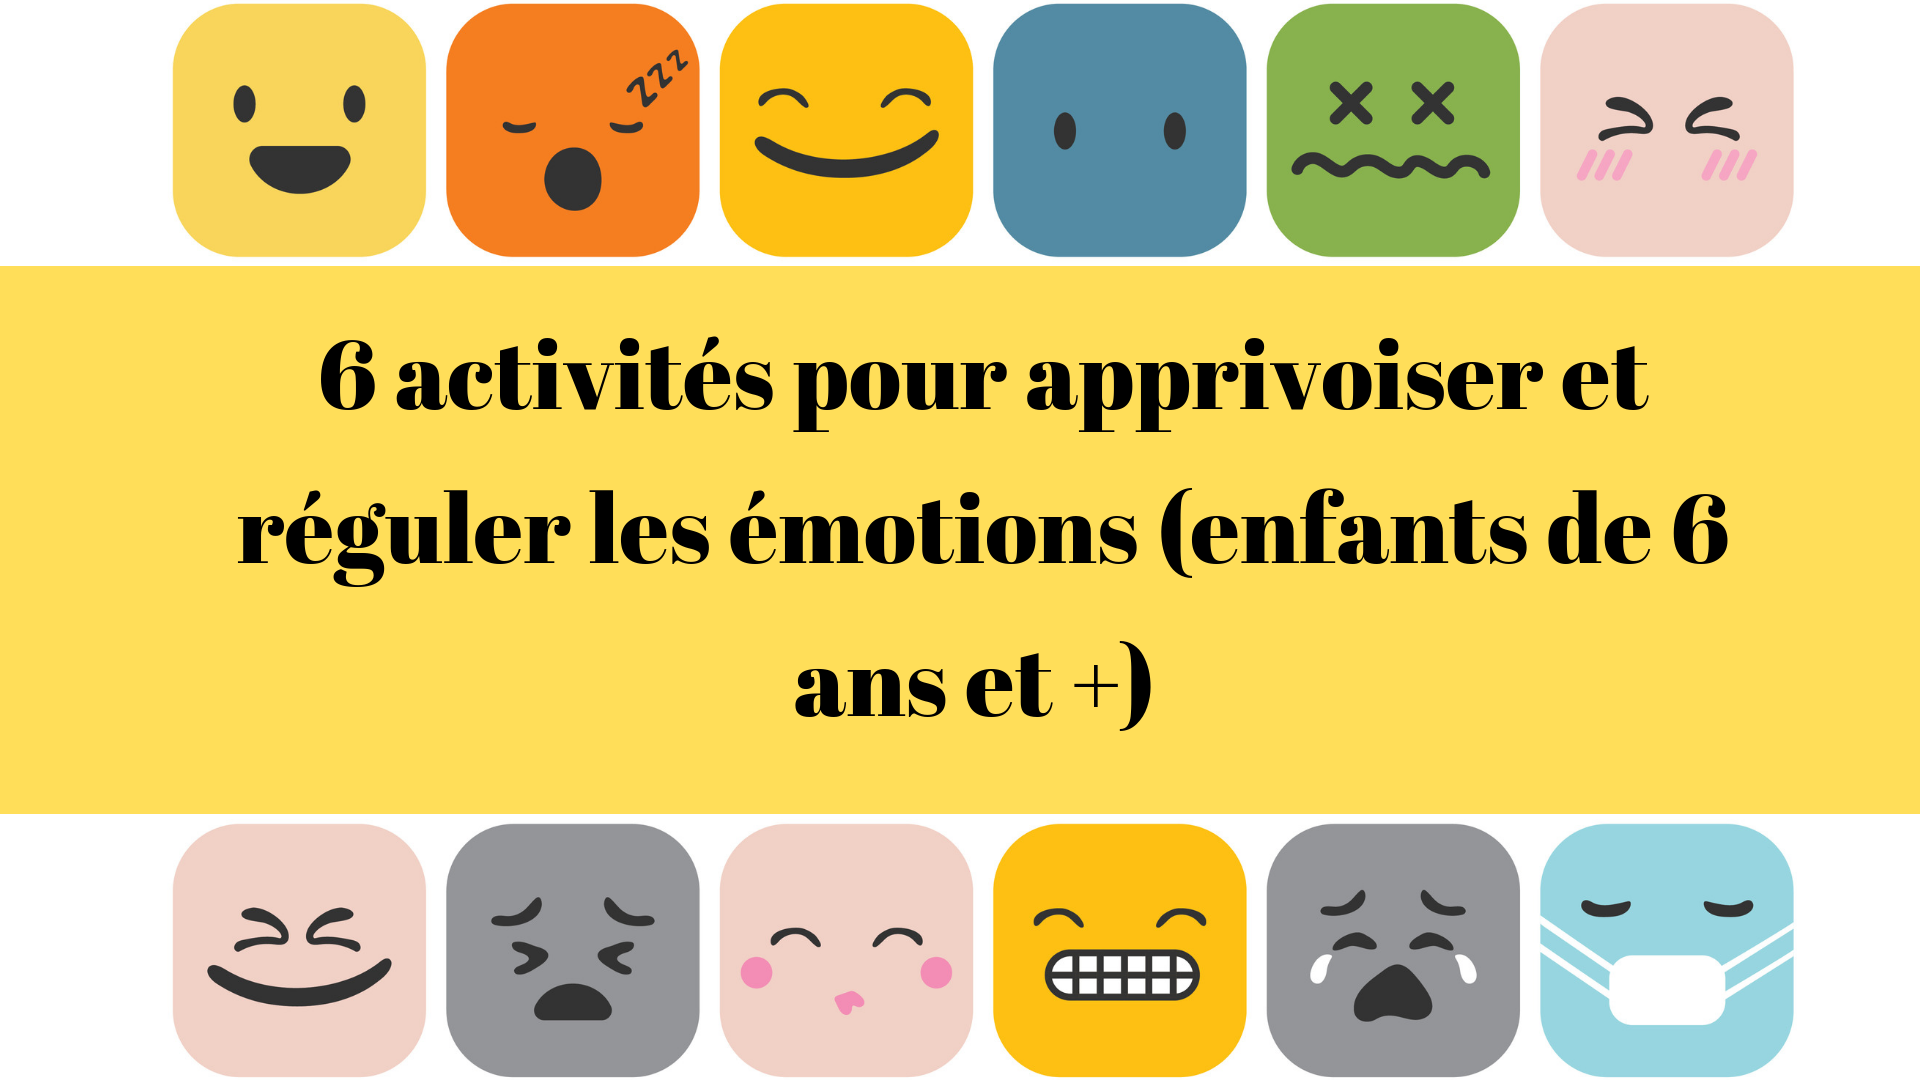 Apprendre les émotions en français 